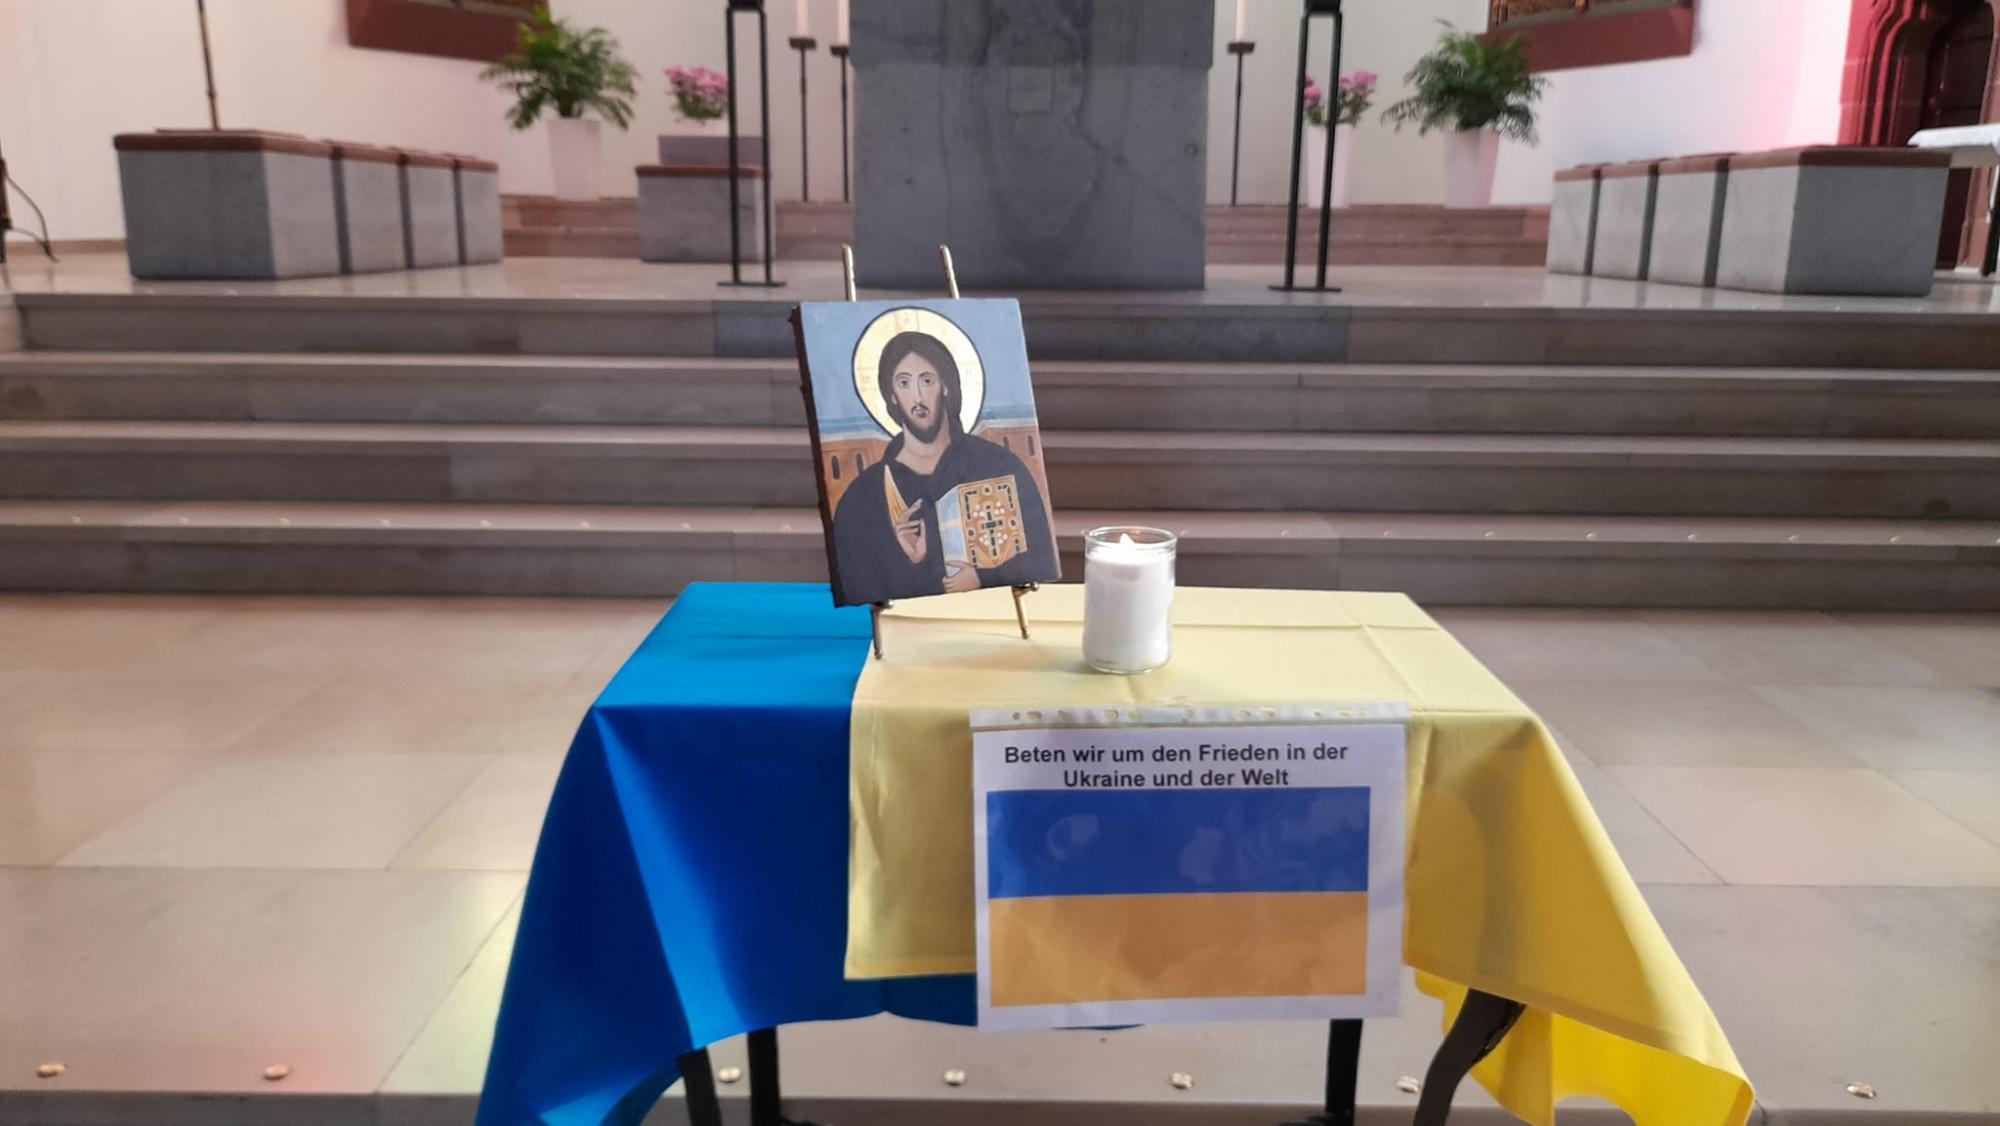 Beten für die Ukraine